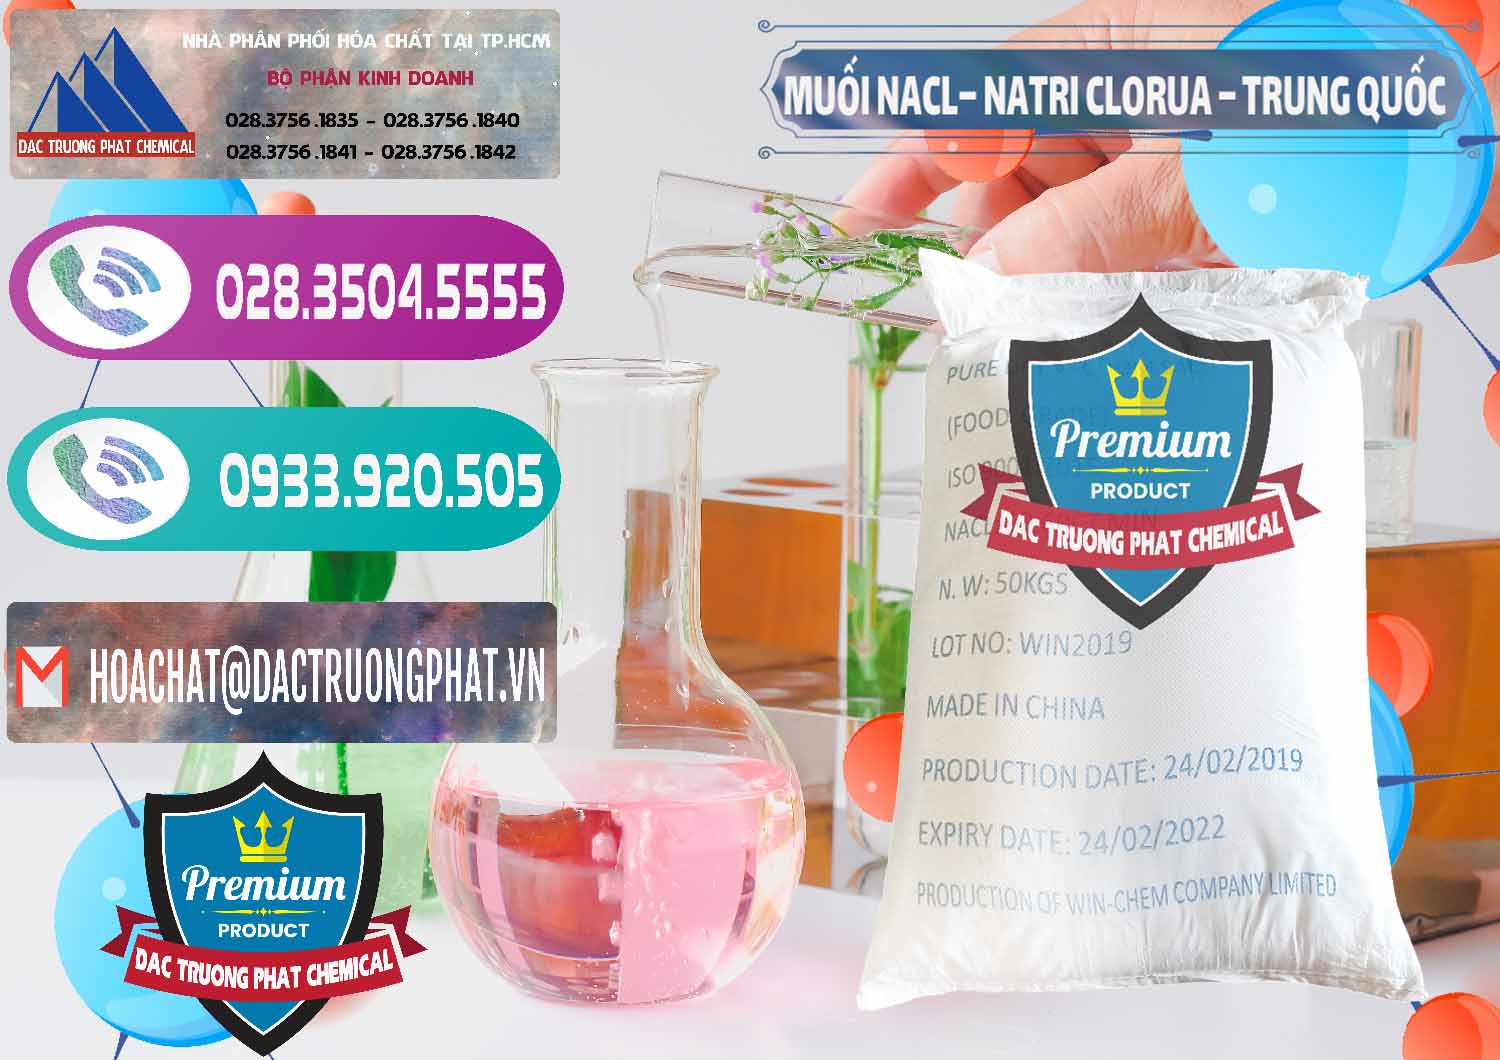 Nơi bán ( cung cấp ) Muối NaCL – Sodium Chloride Trung Quốc China - 0097 - Công ty chuyên bán - phân phối hóa chất tại TP.HCM - hoachatxulynuoc.com